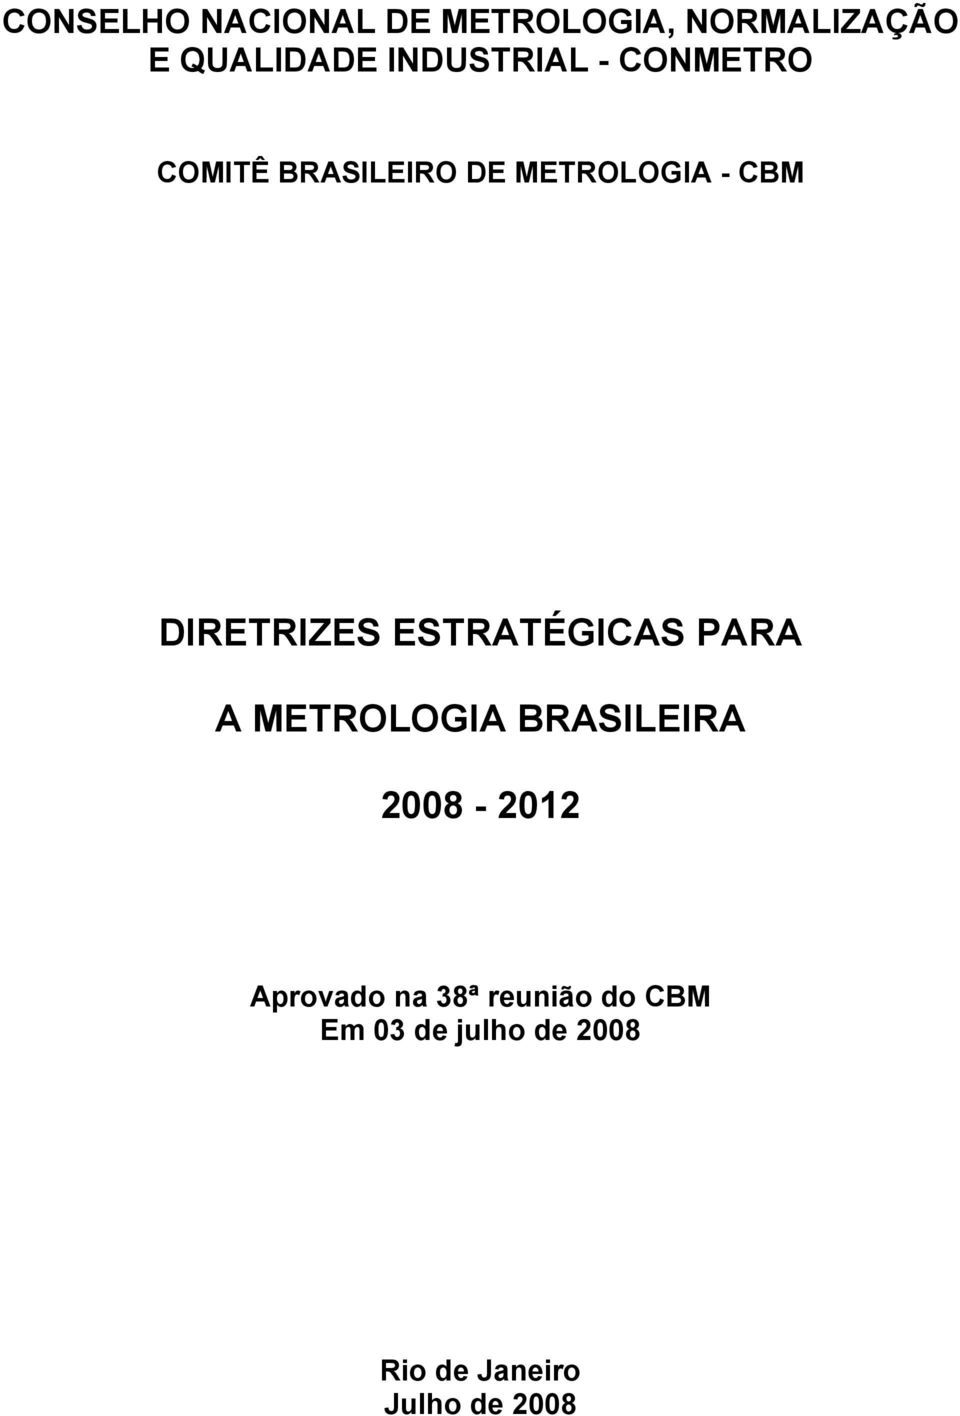 DIRETRIZES ESTRATÉGICAS PARA A METROLOGIA BRASILEIRA 2008-2012